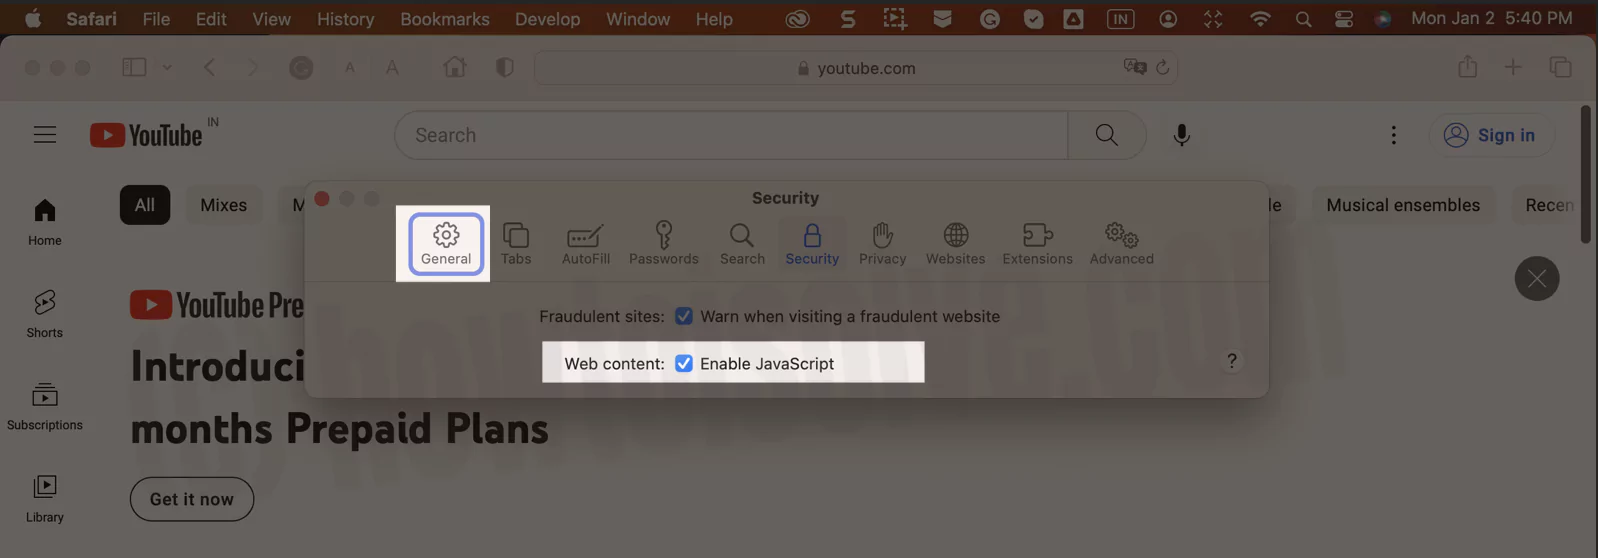 enable-javascript-on-safari-mac